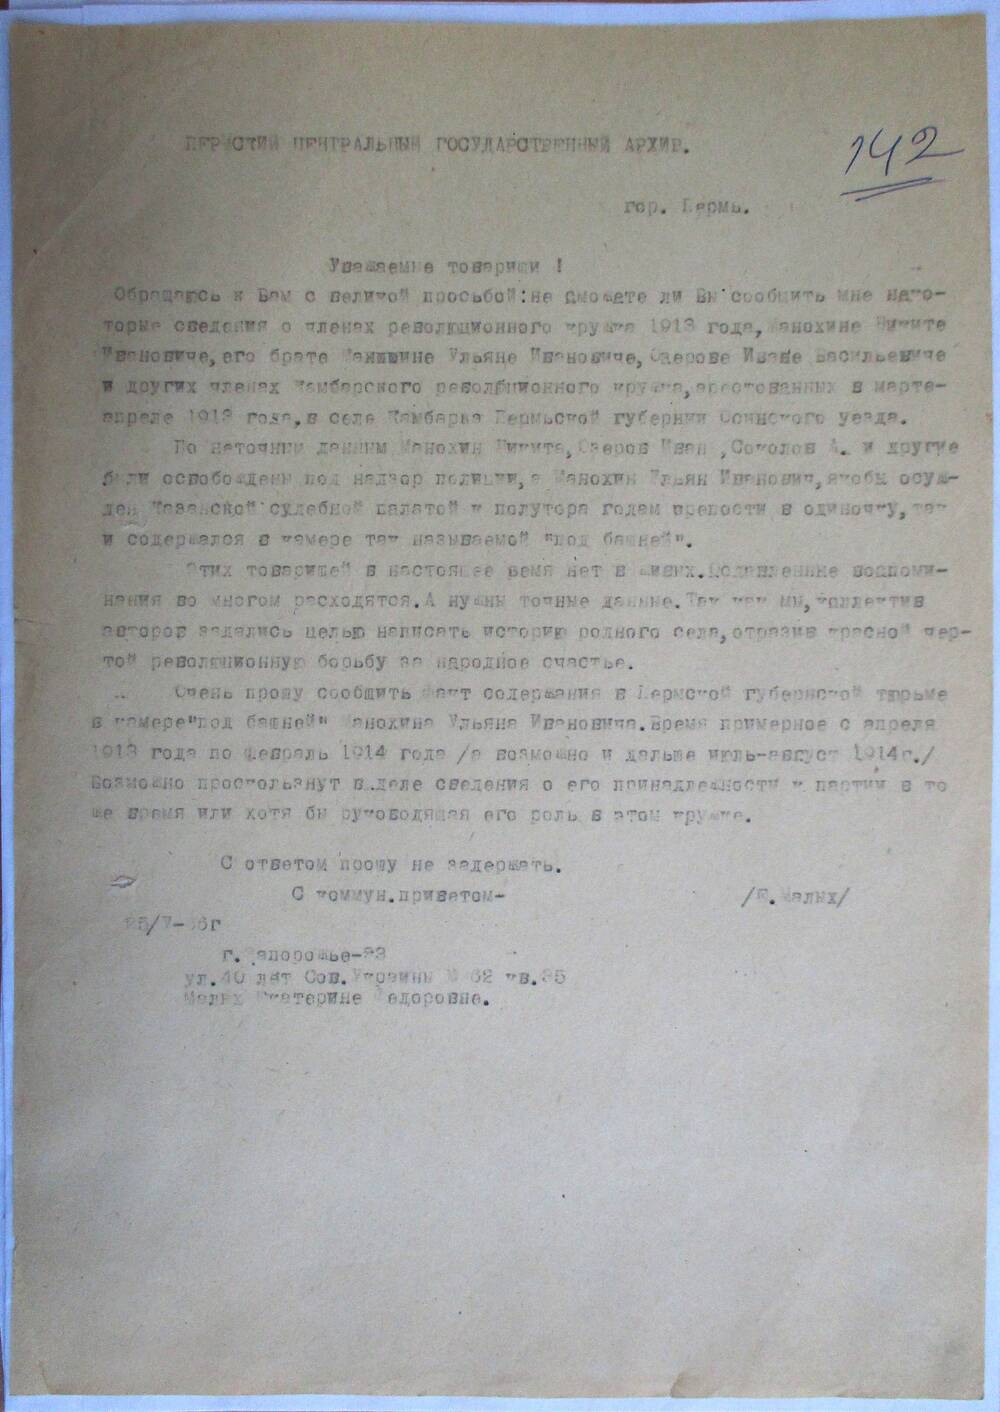 Письмо Е.Малых в Пермский  центральный государственный архив, просьба о предоставлении информации о членах революционного кружка 1913 года